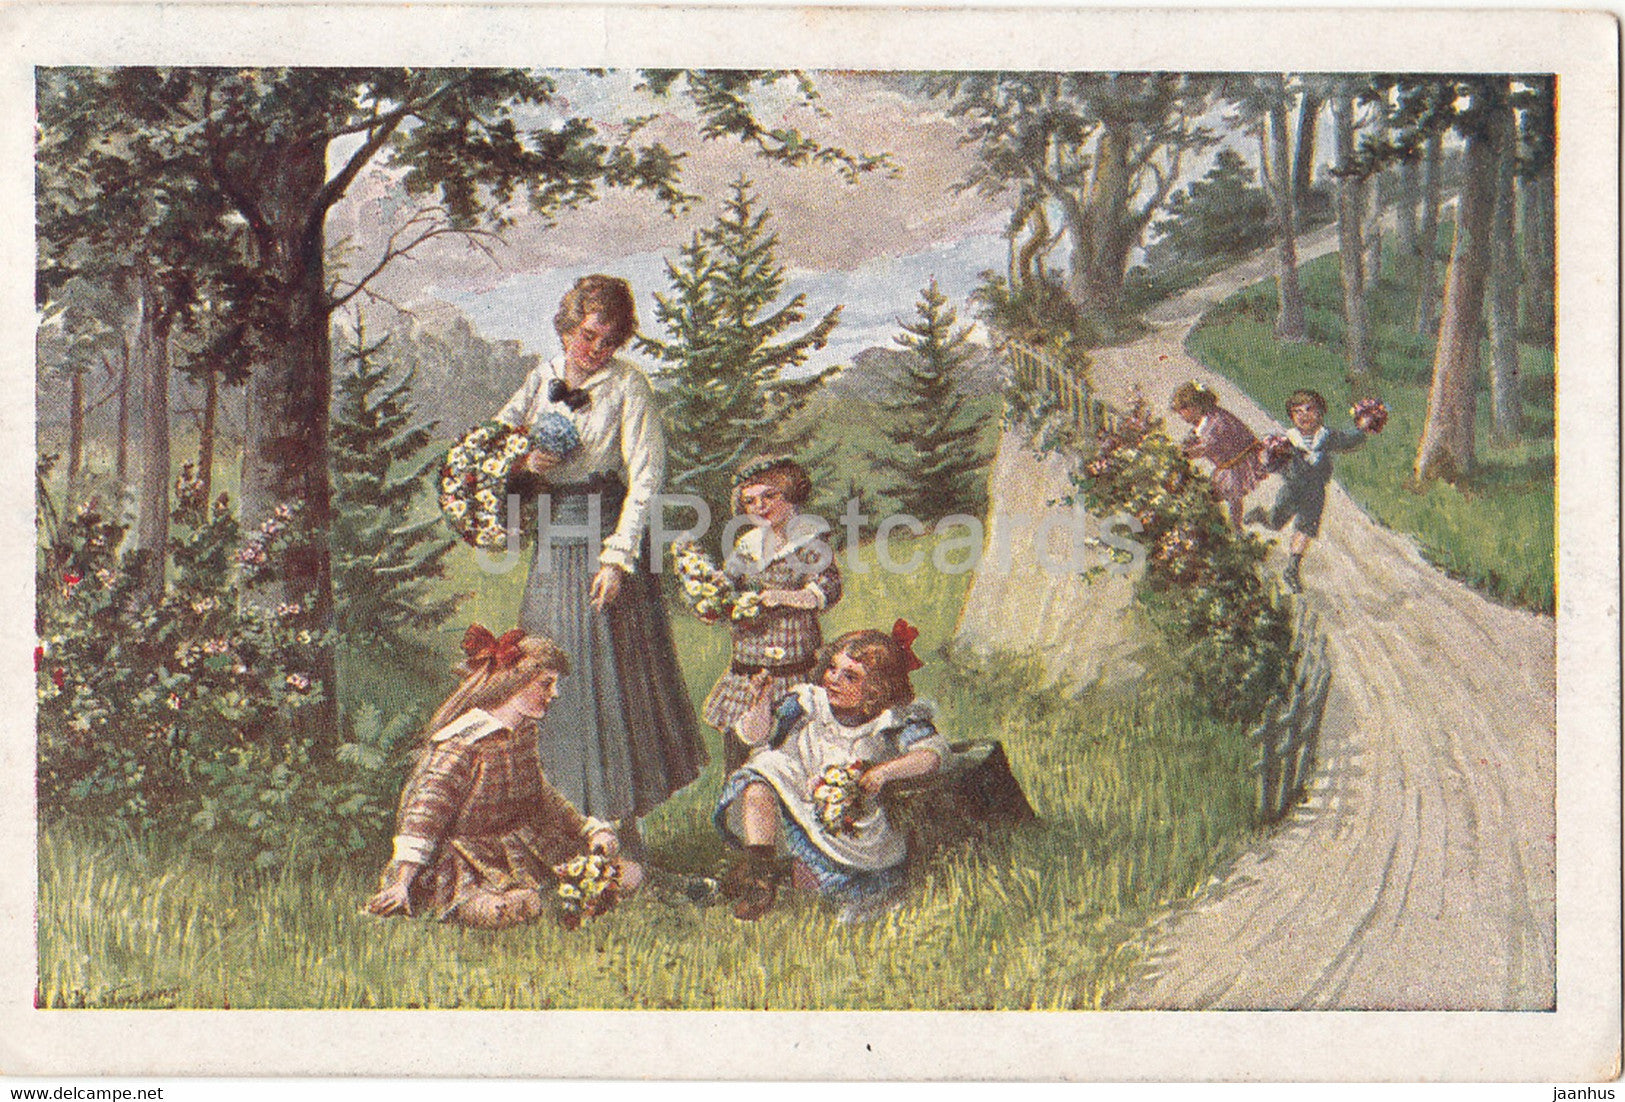 painting by Ad Hartmann - Im Wald und auf der Helde - 2606 - German art - old postcard - Austria - used - JH Postcards